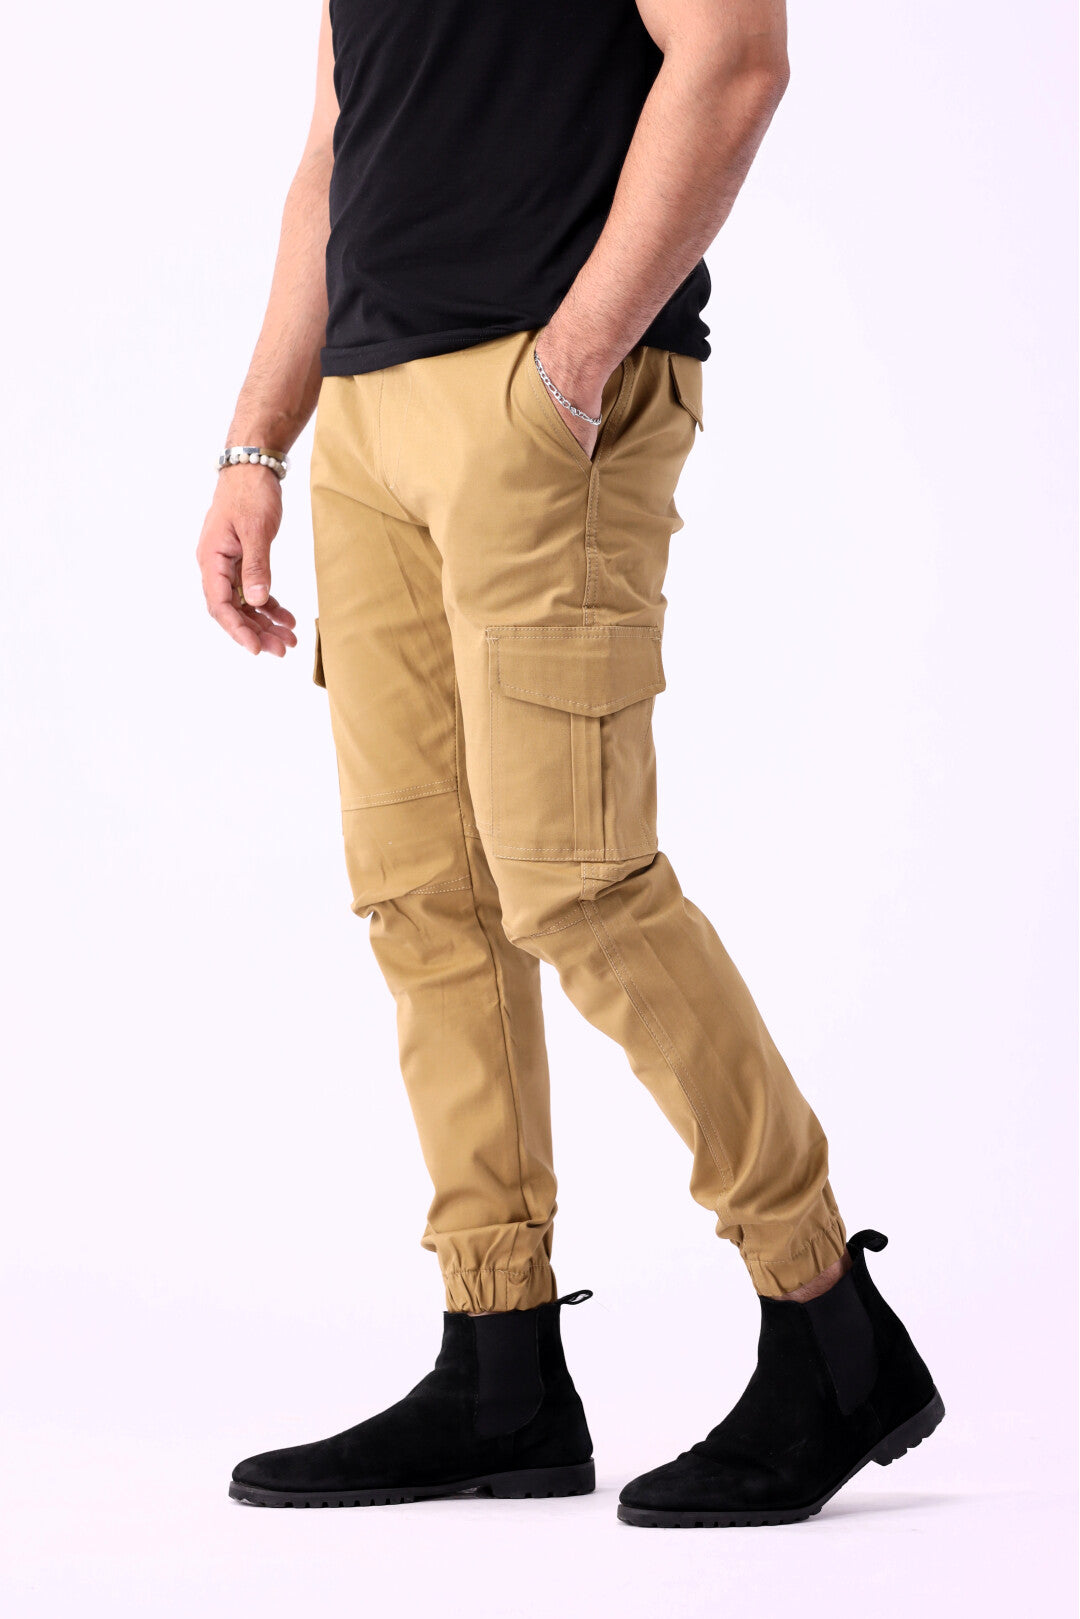 Kid's six-pocket cargo pants (Olive) Details | ASR world Fashion